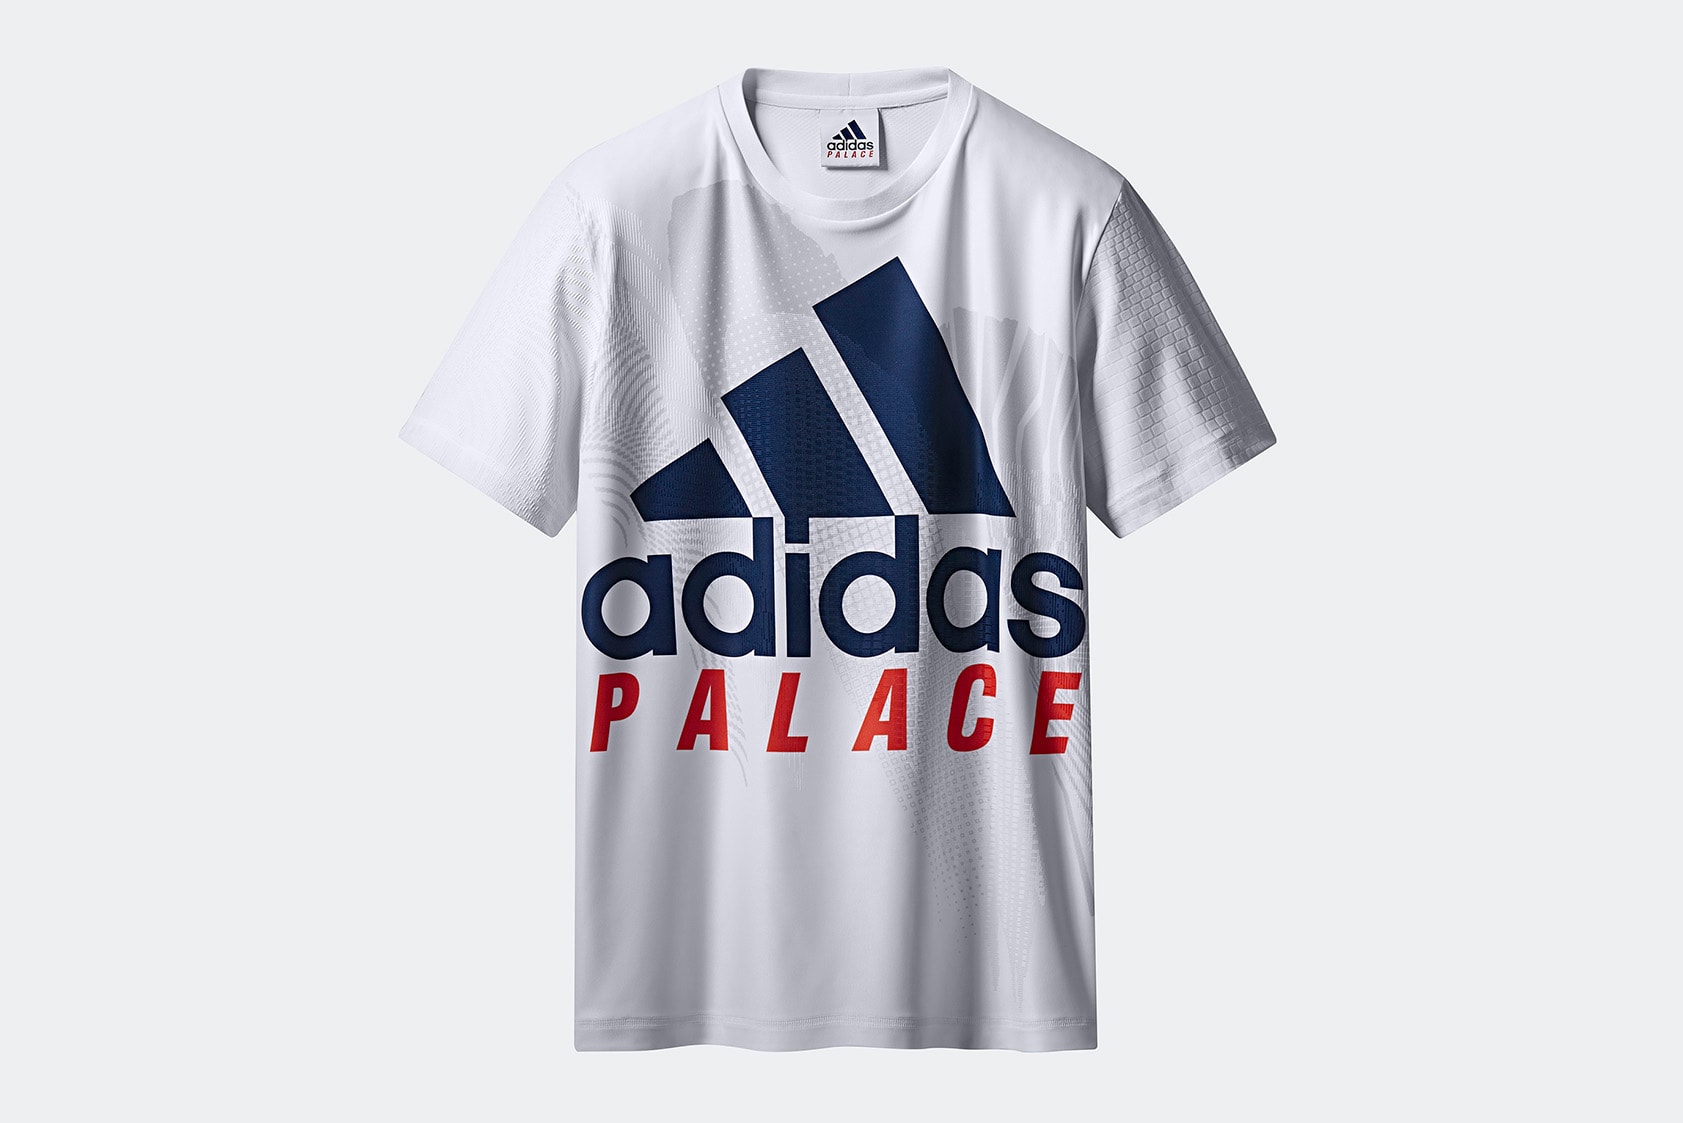 Palace x adidas 2018 網球主題聯名系列完整單品一覽